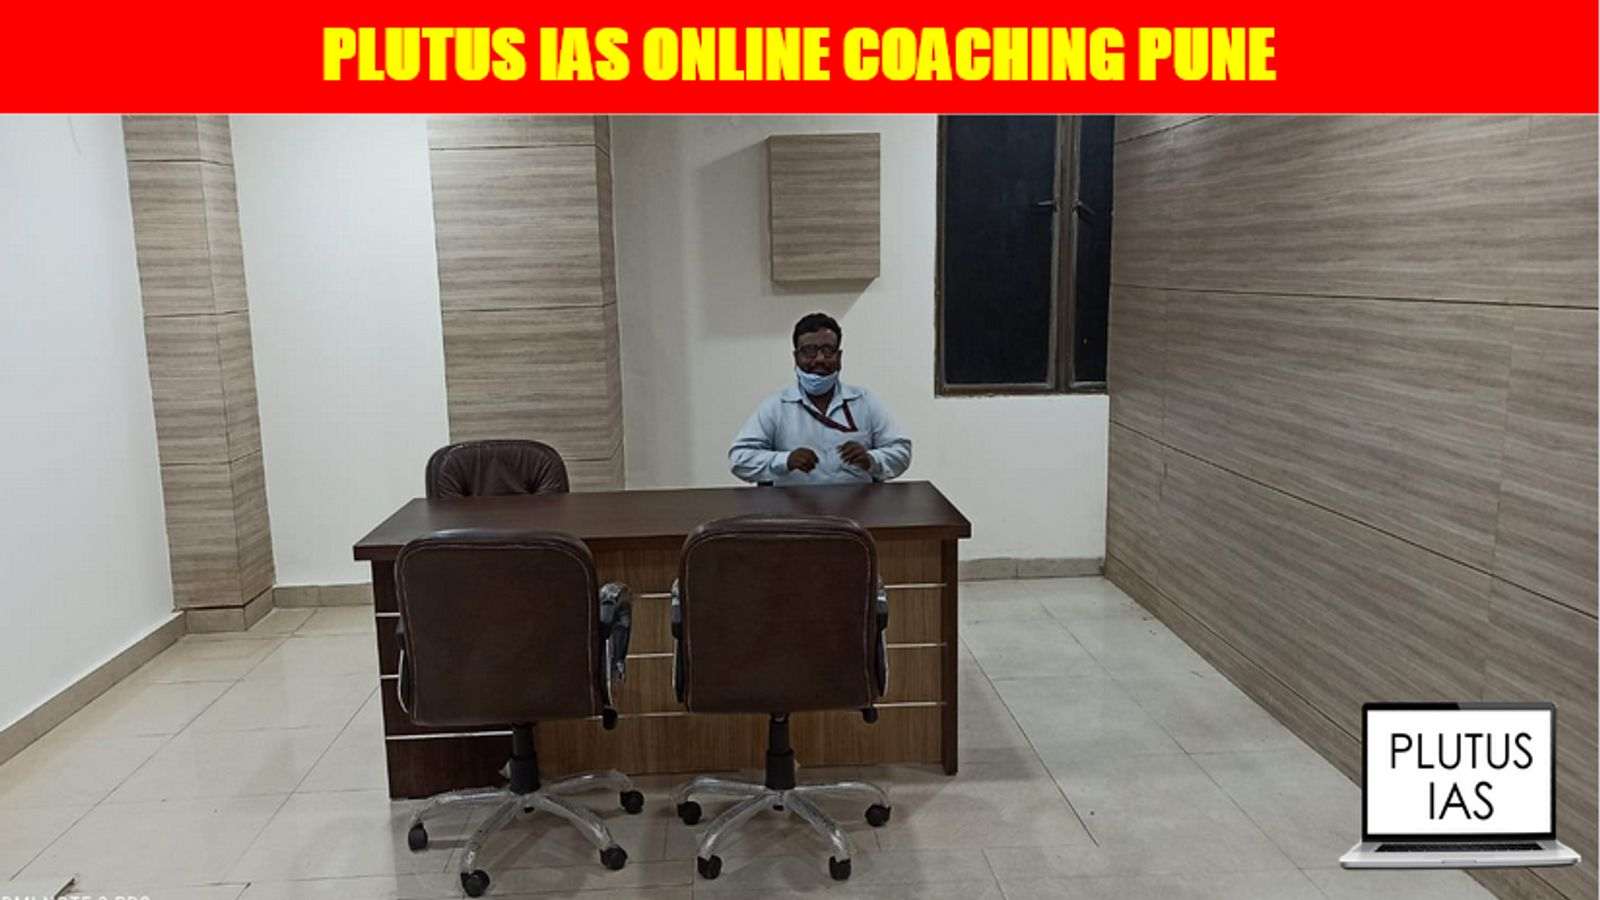 Plutus IAS Online Coaching Pune